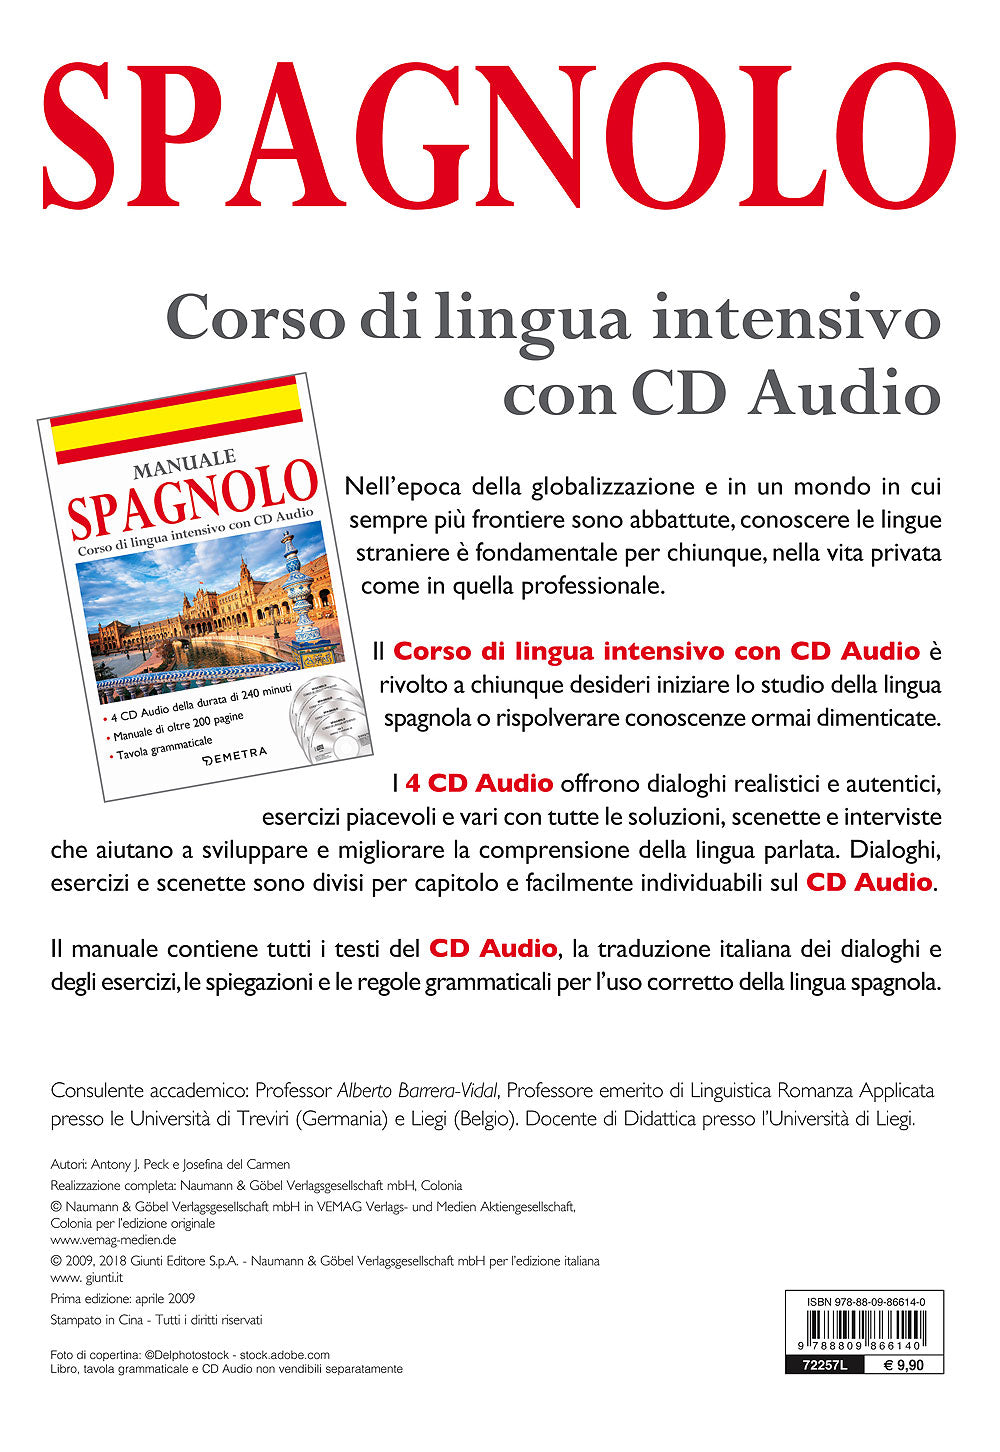 Corso di lingua Spagnolo intensivo con CD Audio. 4 CD della durata di 240 minuti - Manuale di oltre 200 pagine - Tavola grammaticale